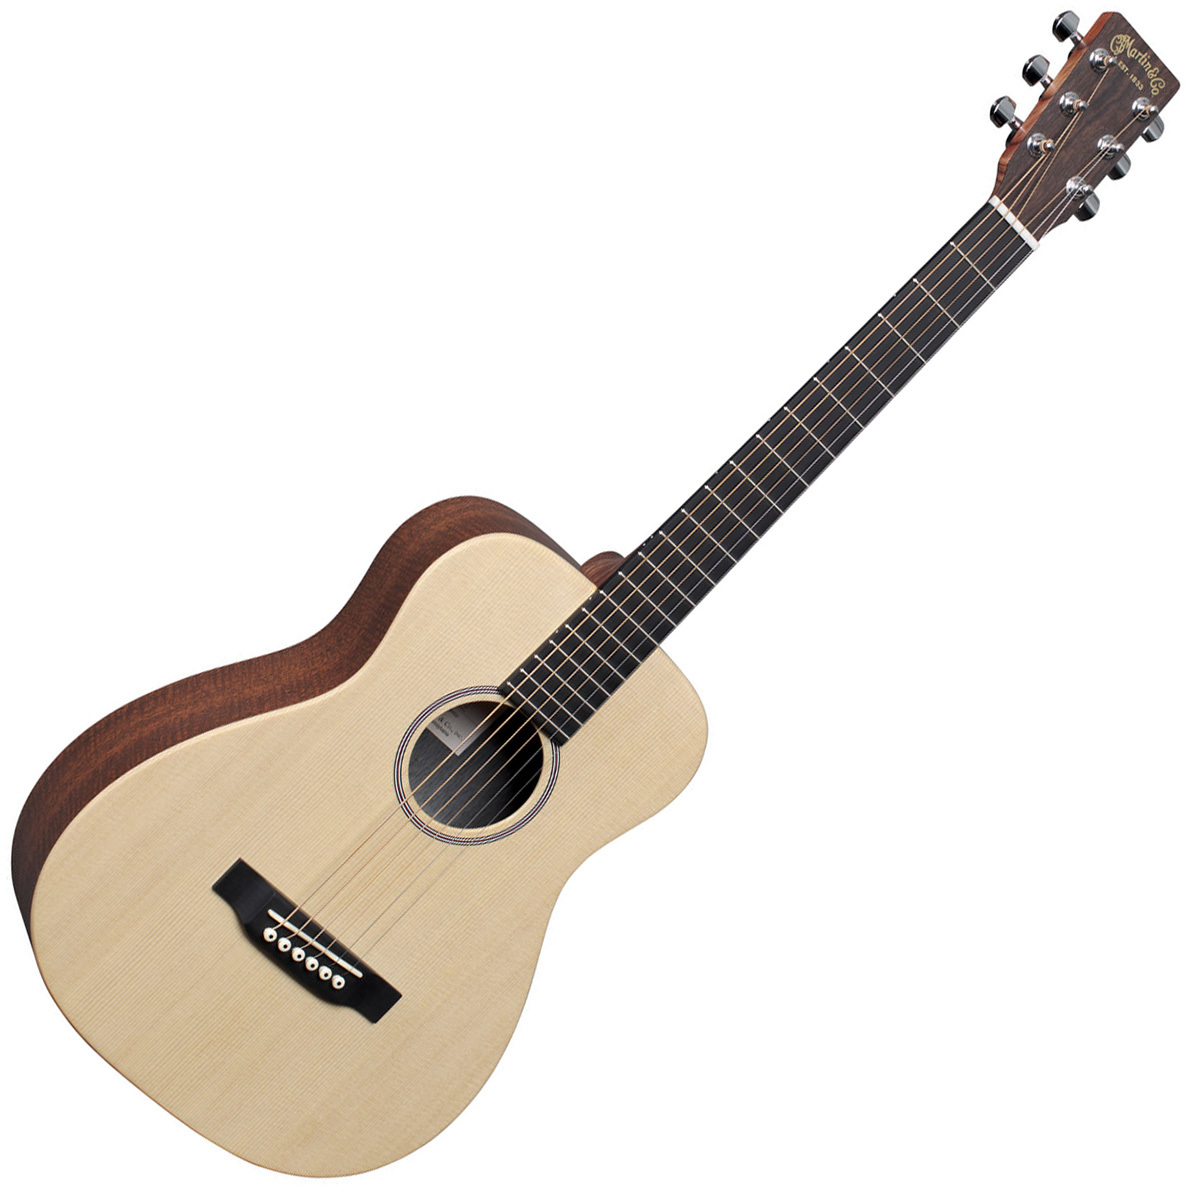 Martin LX1 ピックアップ付き アコギ ミニギター - アコースティックギター